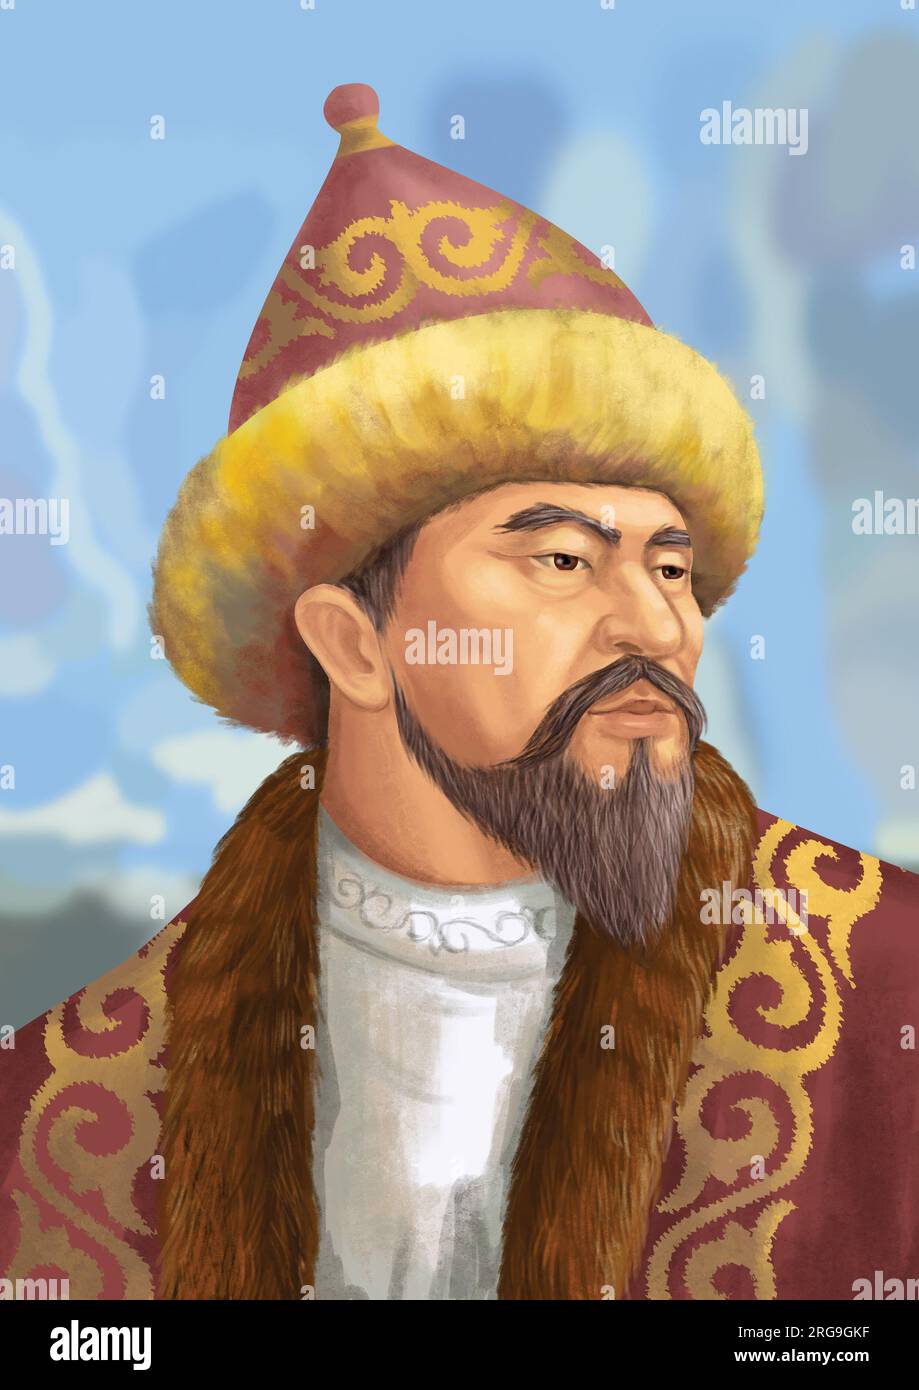 Yesim Khan - der kasachische König, der eine grundlegende Rolle bei der Reform des politischen Systems des kasachischen Staates spielte. Stockfoto